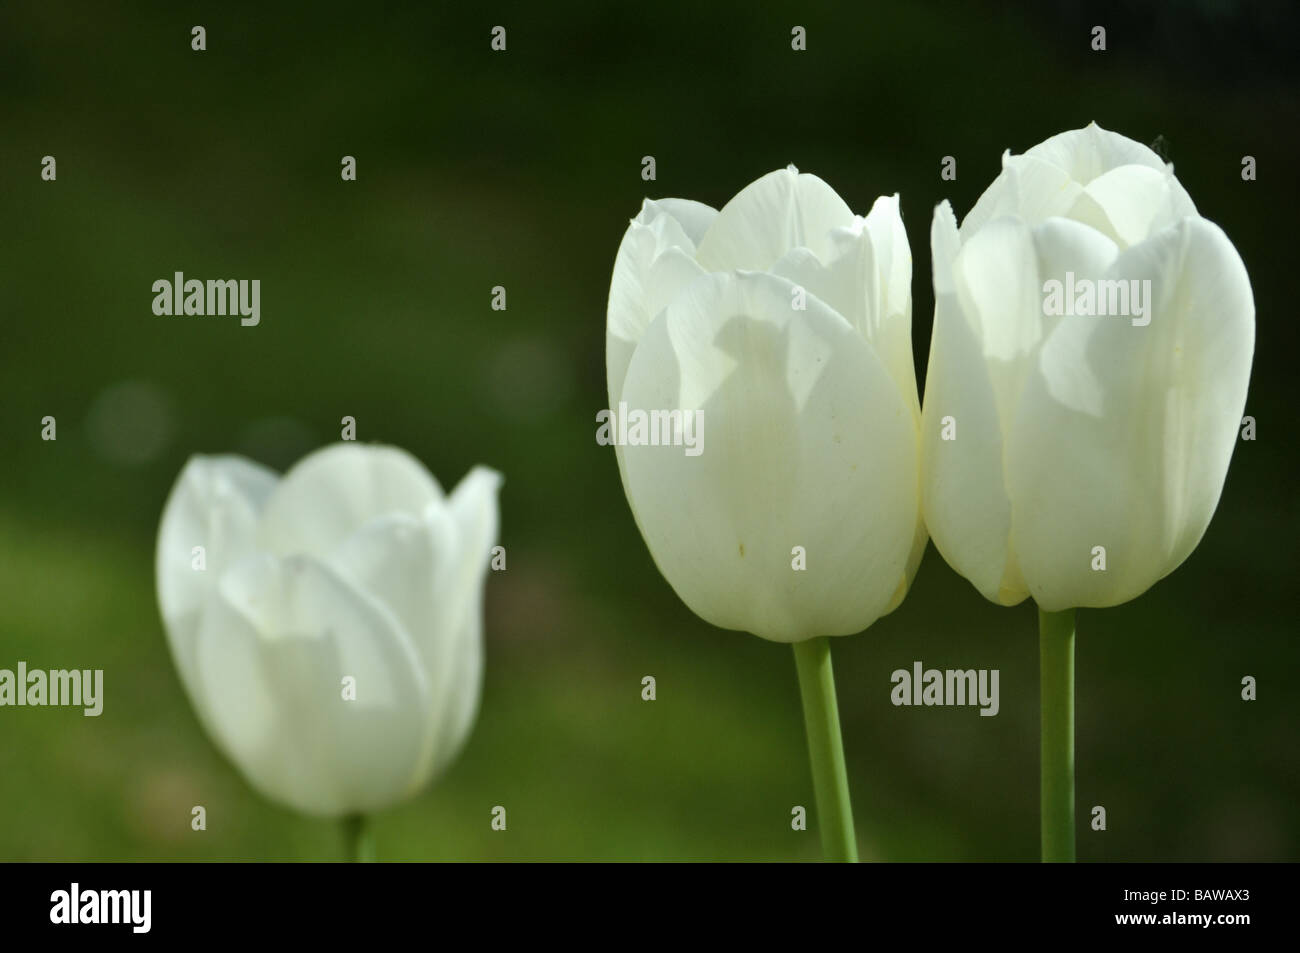 Trionfo tulipani avorio Foto Stock